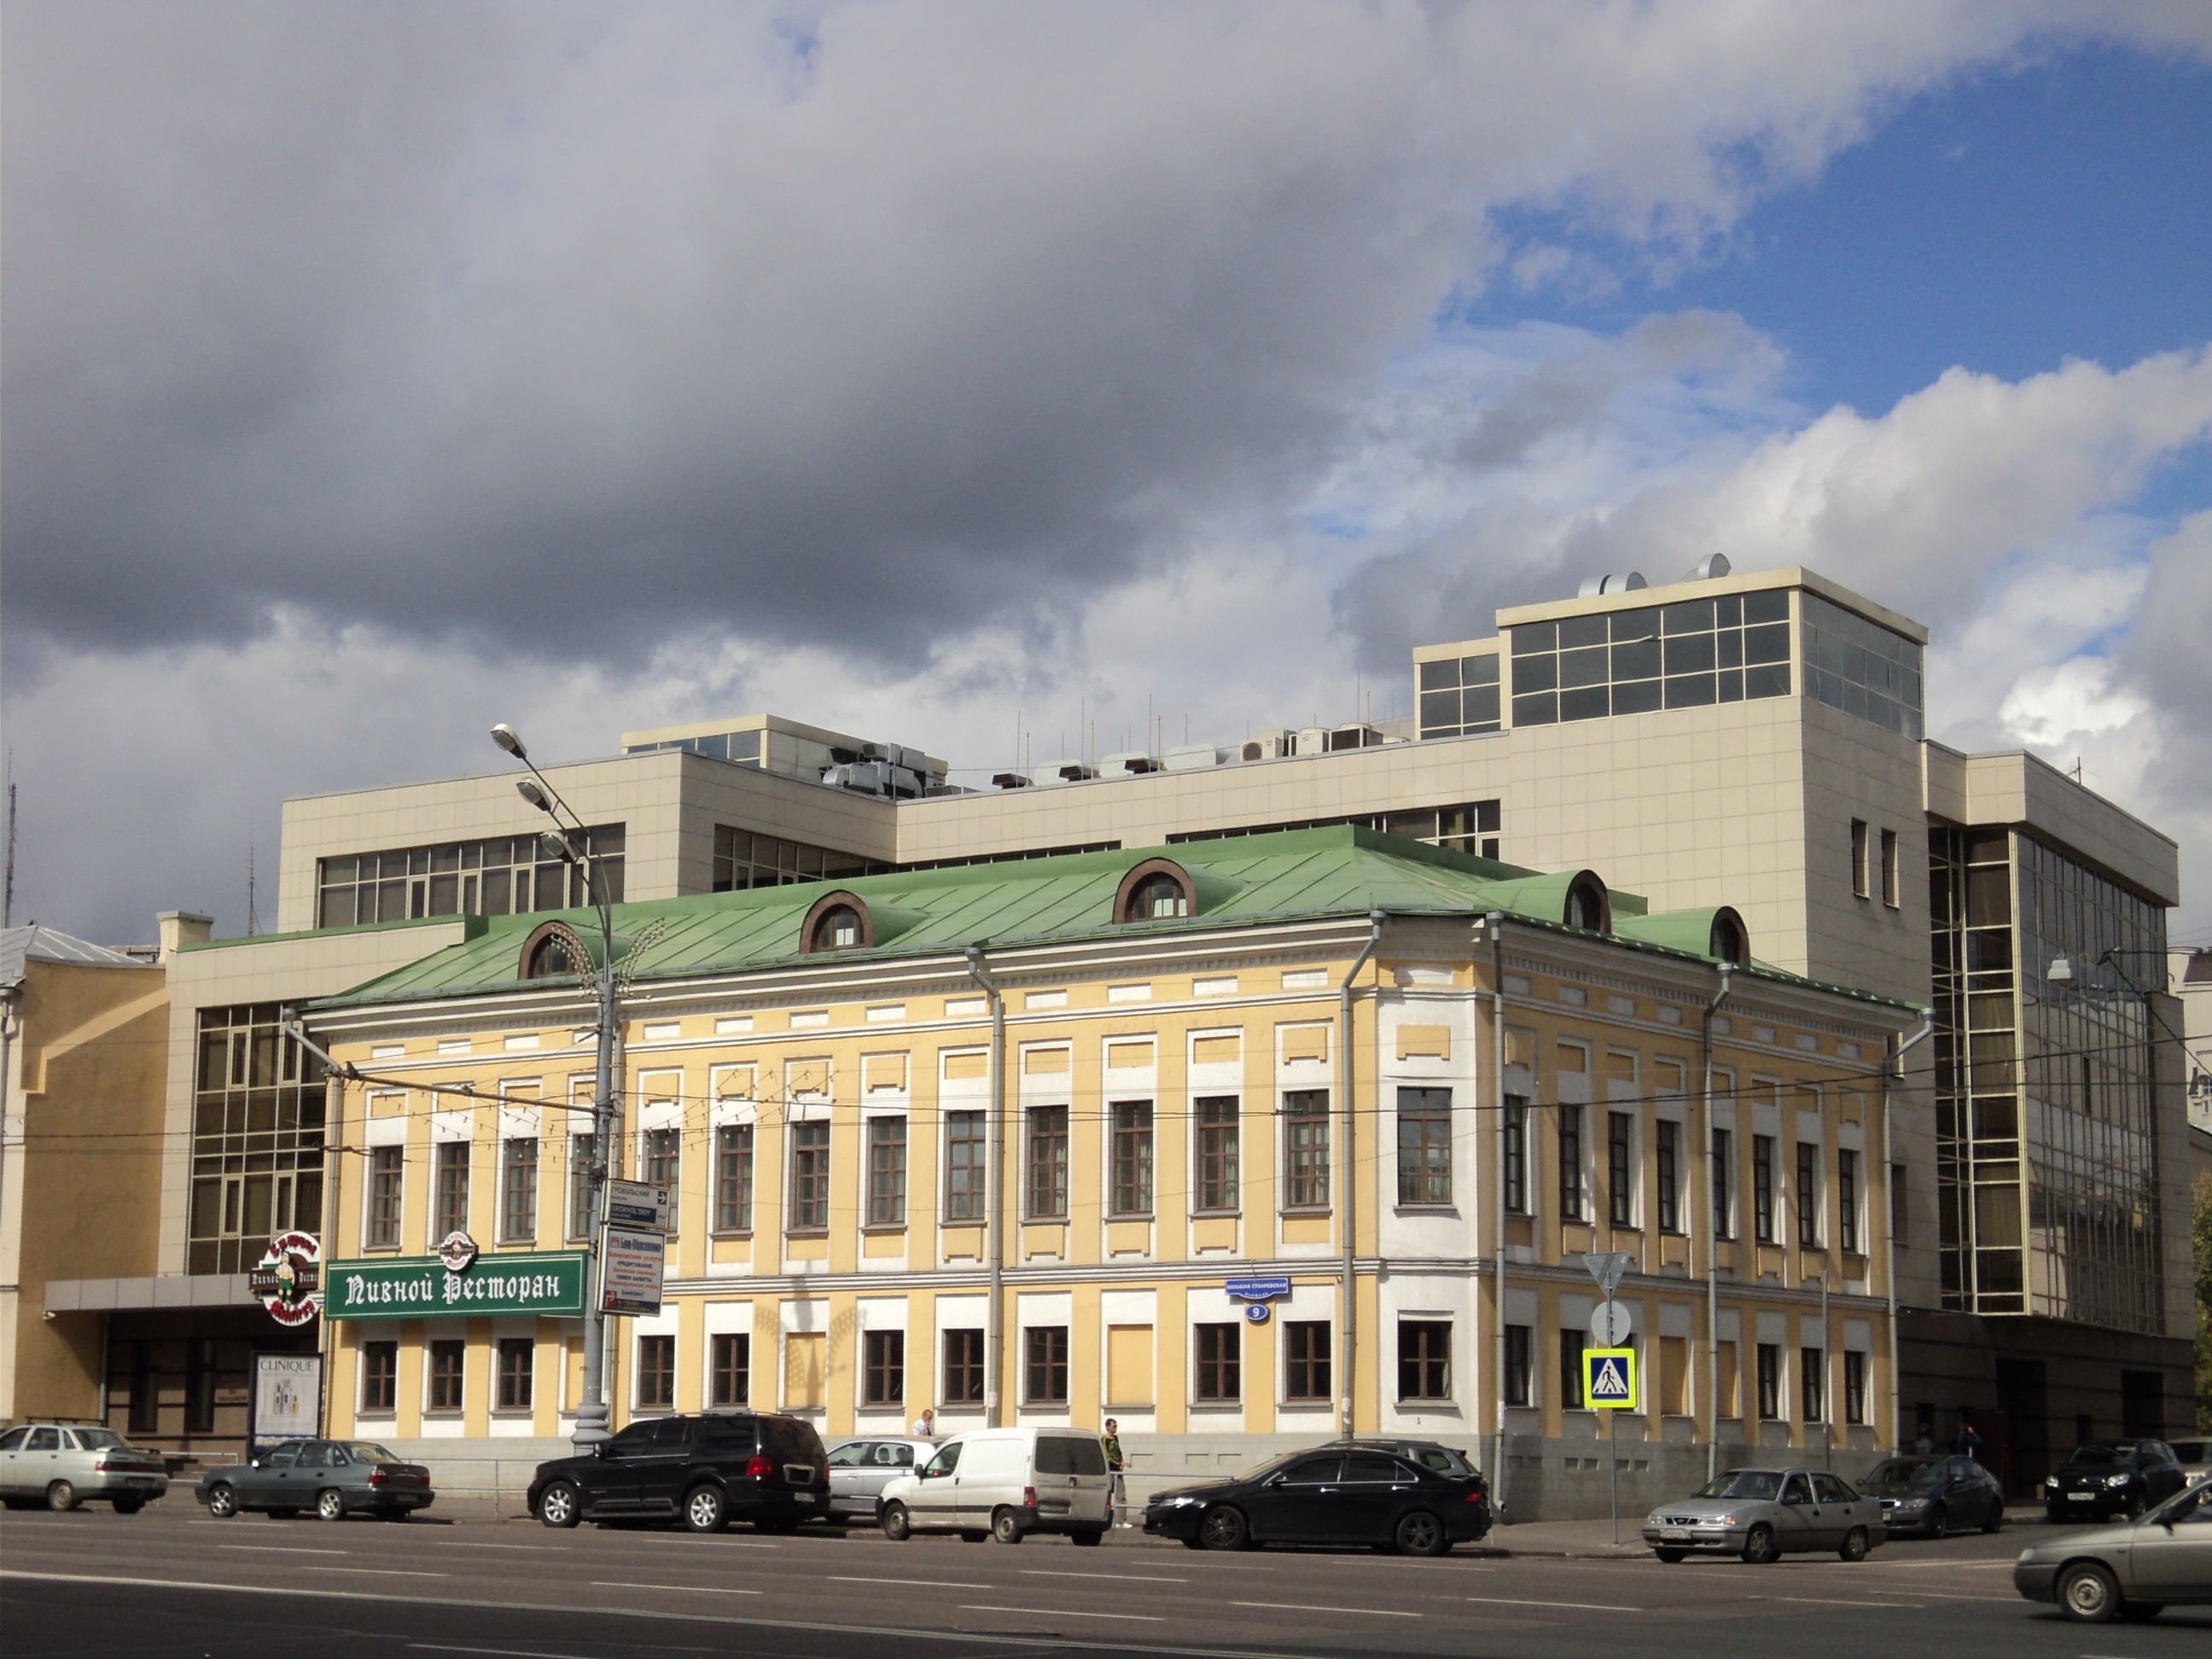 Большая московская дом 9